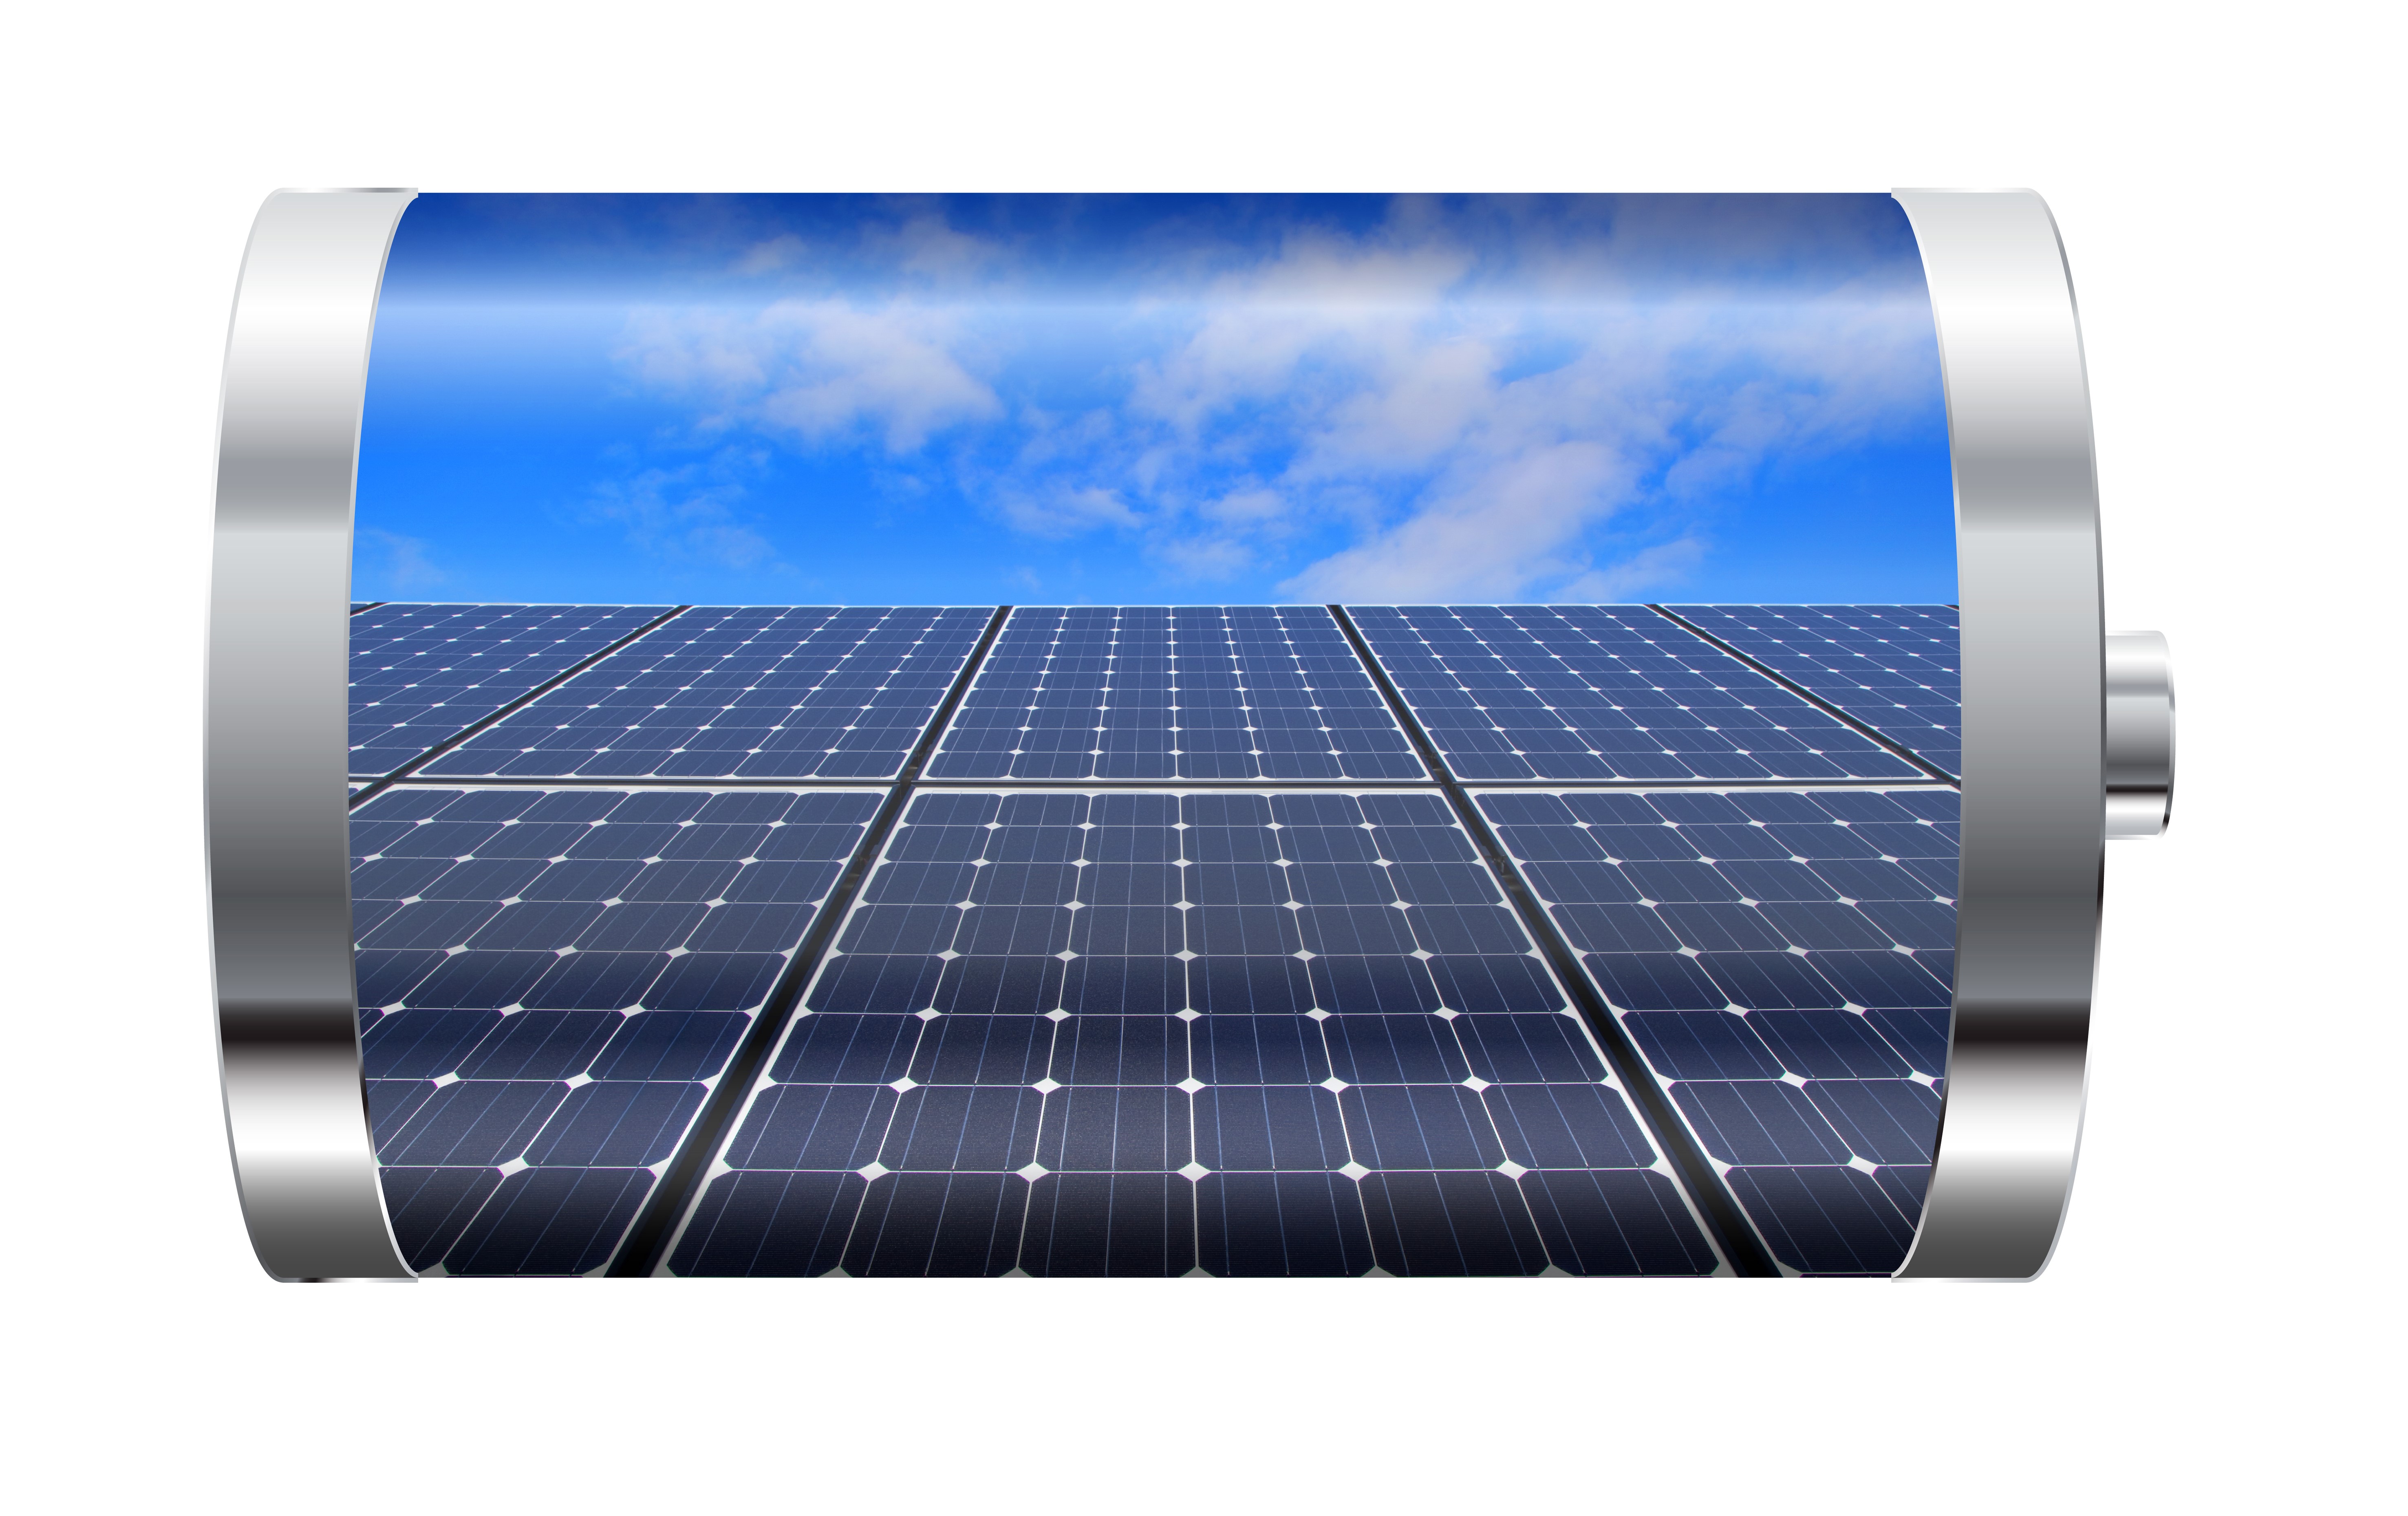 פורום אנרגיה 47: מערכות משולבות אגירה לייצור חשמל מאנרגיית השמש